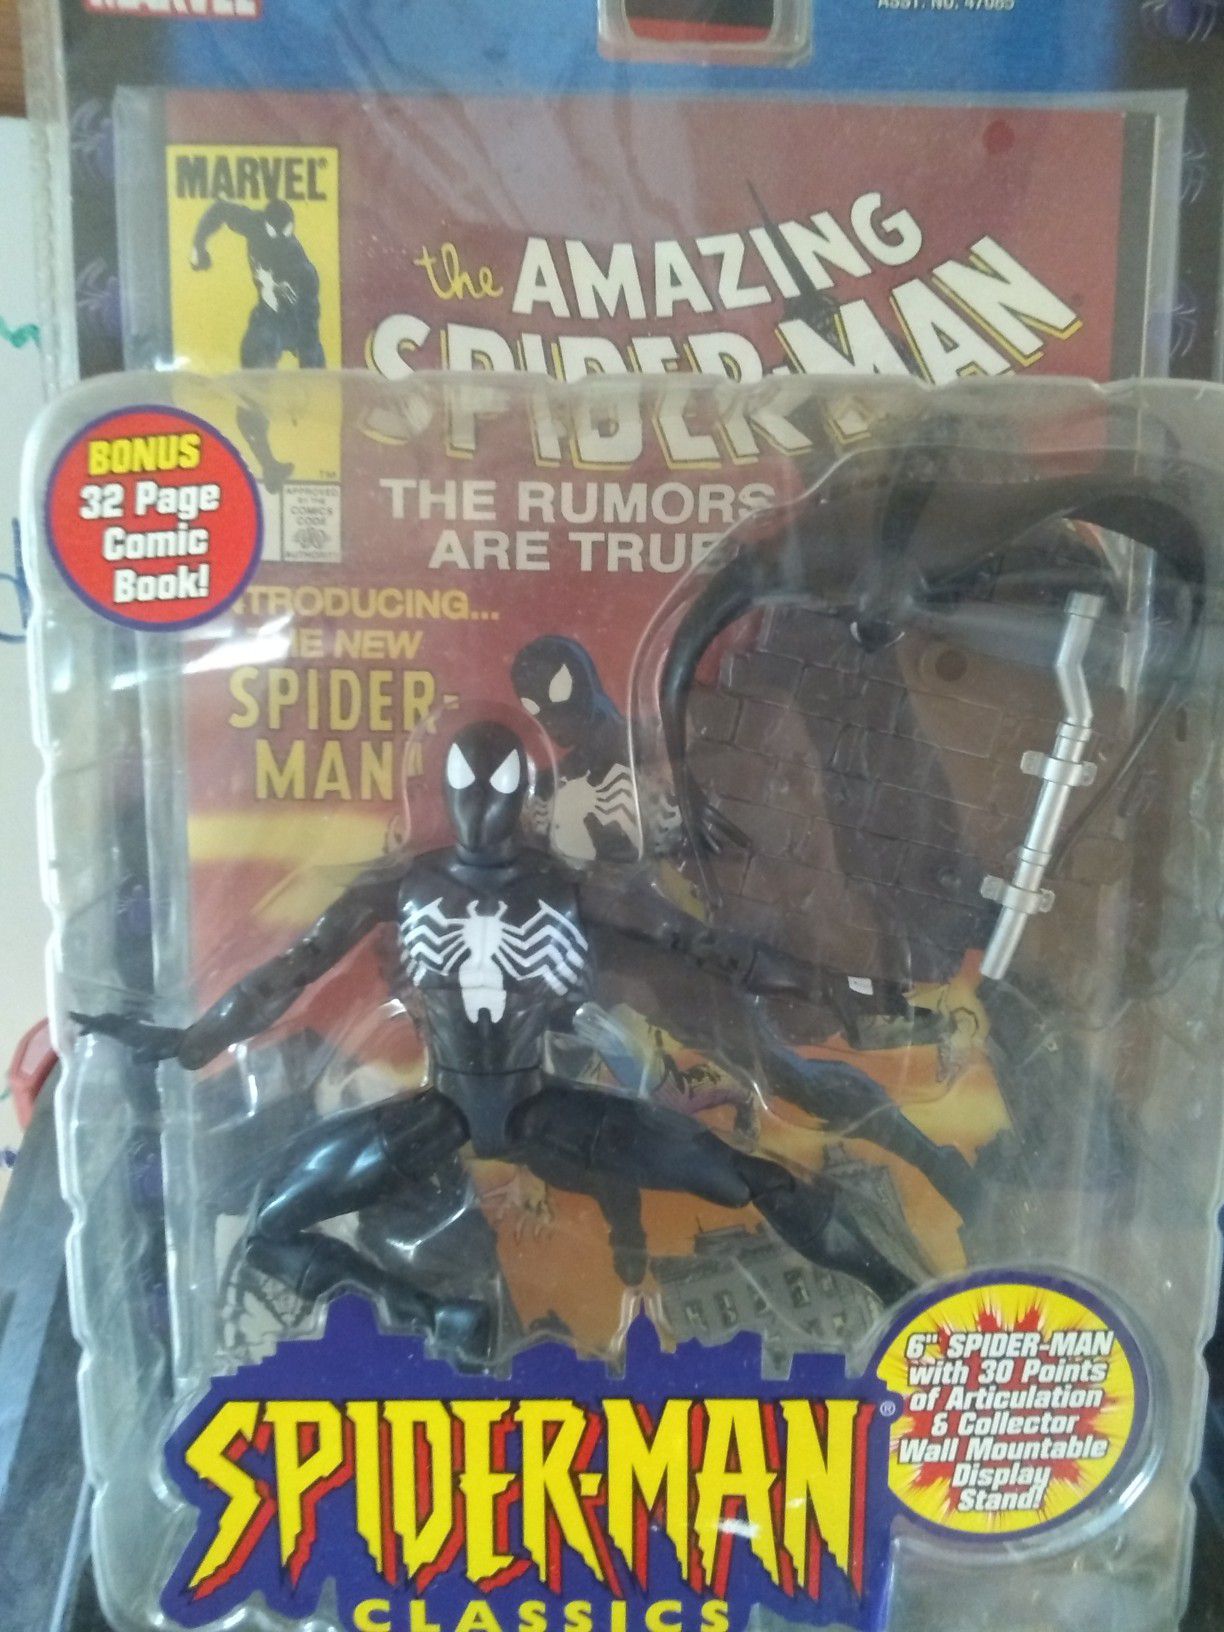 Spider-Man Classics Black costume Spider-Man